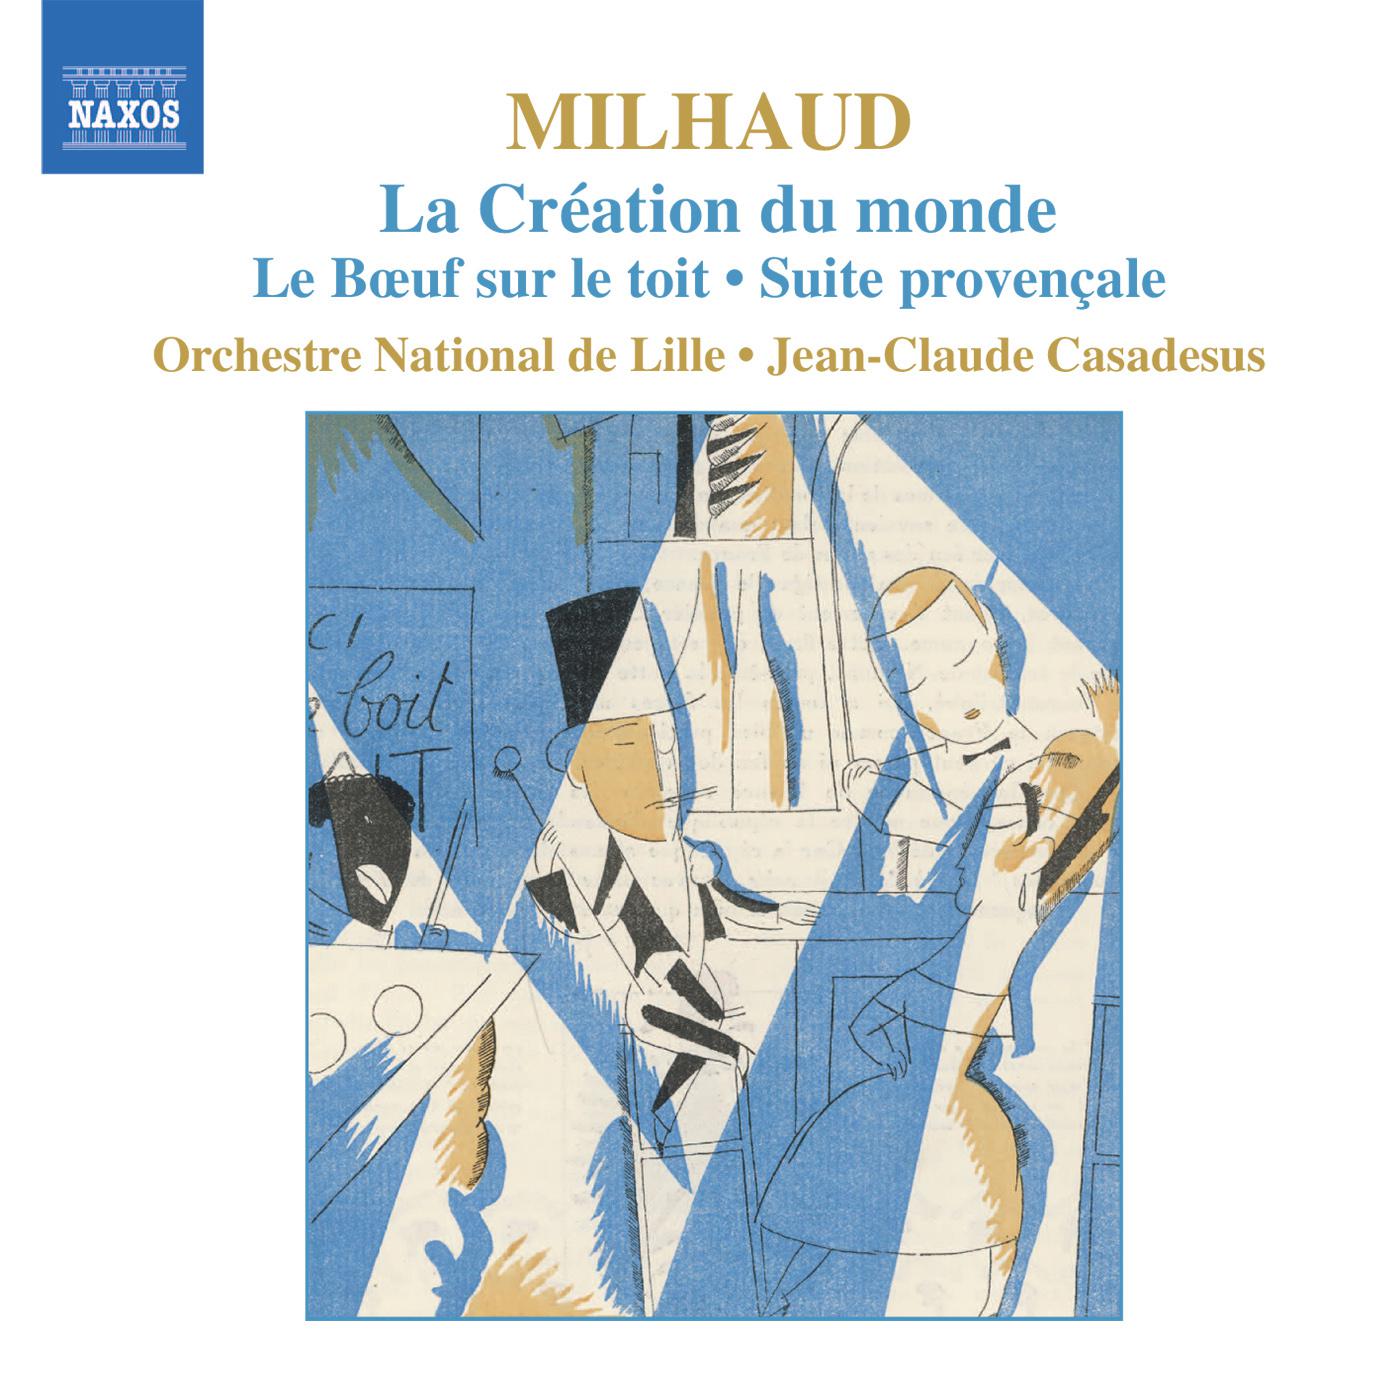 MILHAUD, D.: Creation du monde (La) / Le Boeuf sur le toit / Suite provencale